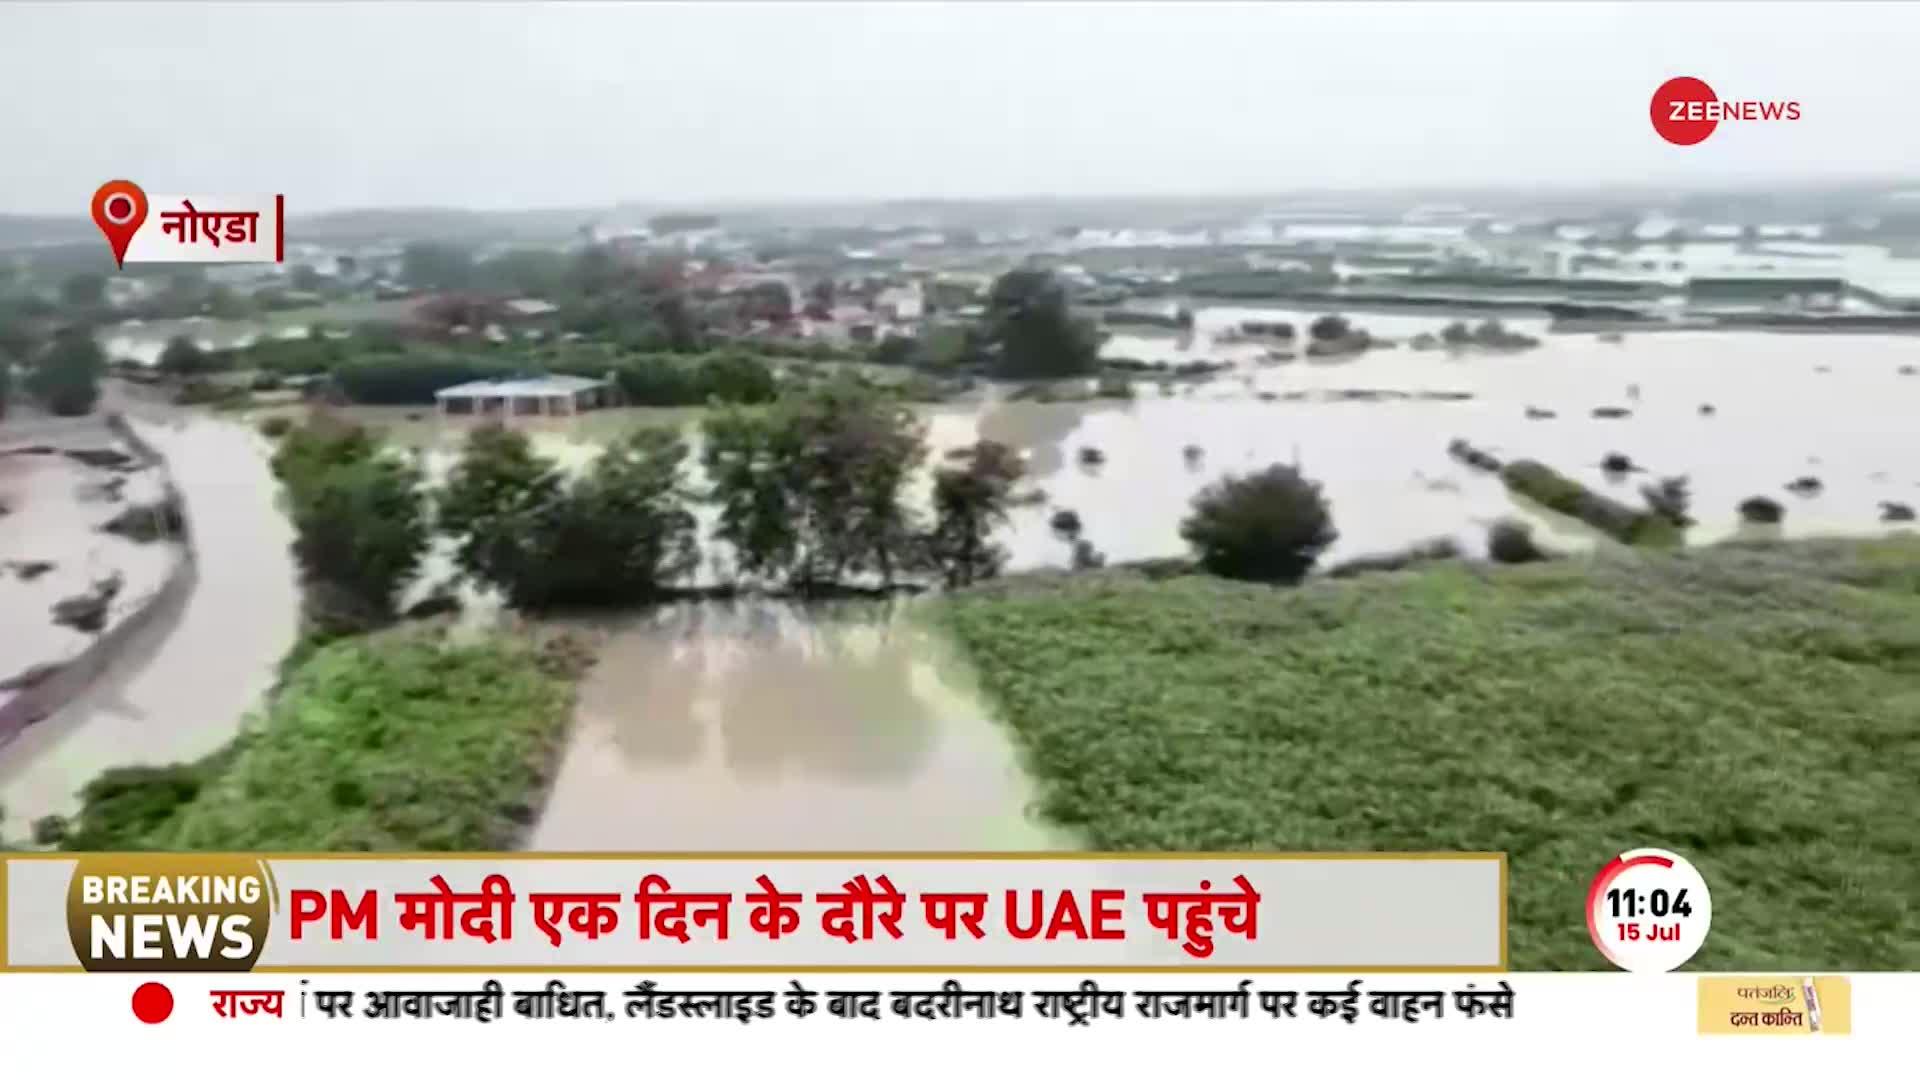 Delhi Floods Update: दिल्ली में बाढ़ से हाहाकार! खतरा बरकरार...सावधान! आज बरसेगी आफत की बारिश